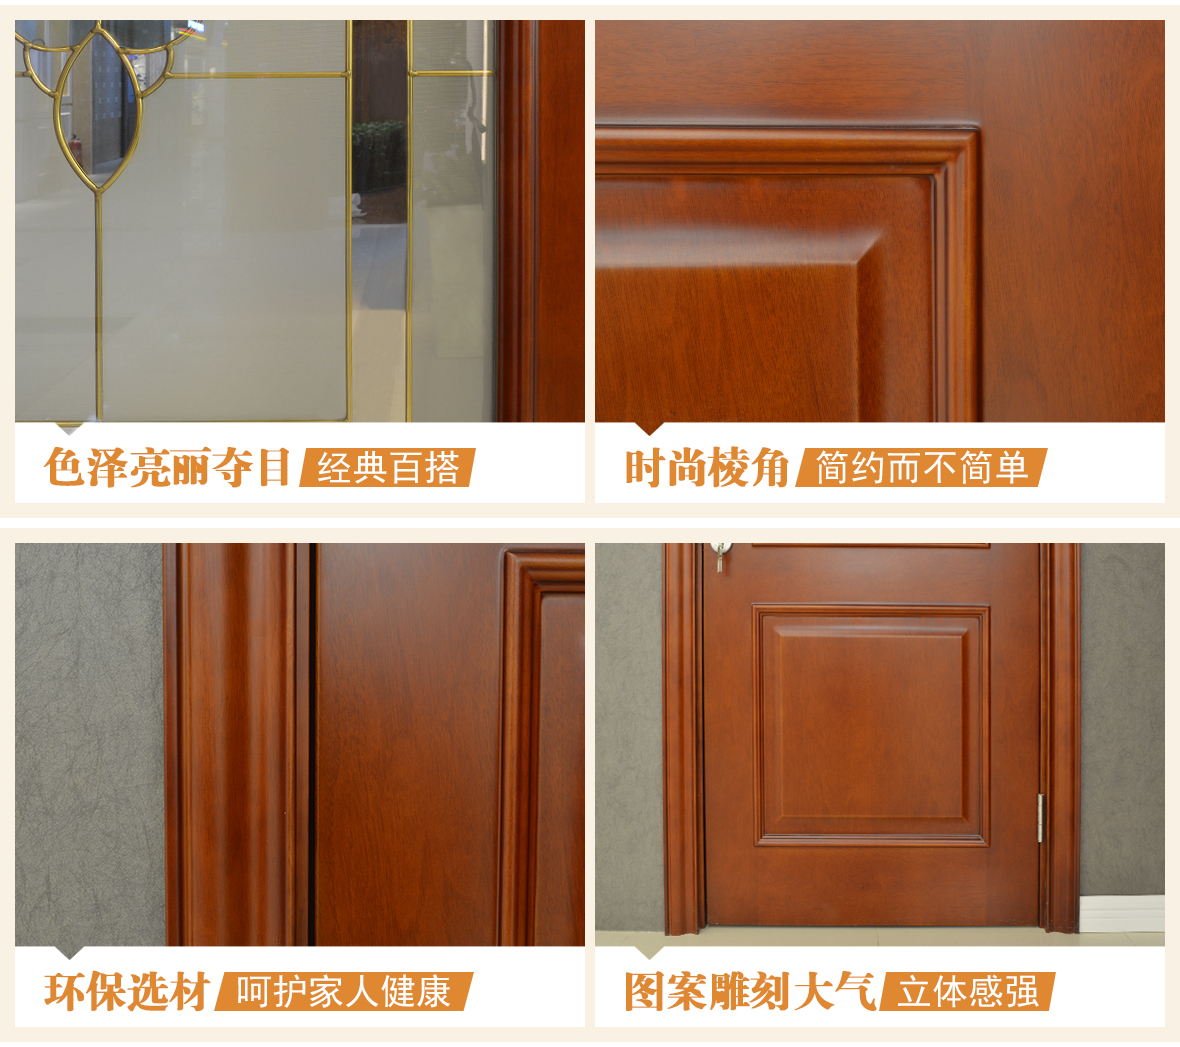 龙鼎天著 LBN-104B型号实木复合门 环保材质室内门 木门专属定制 细节